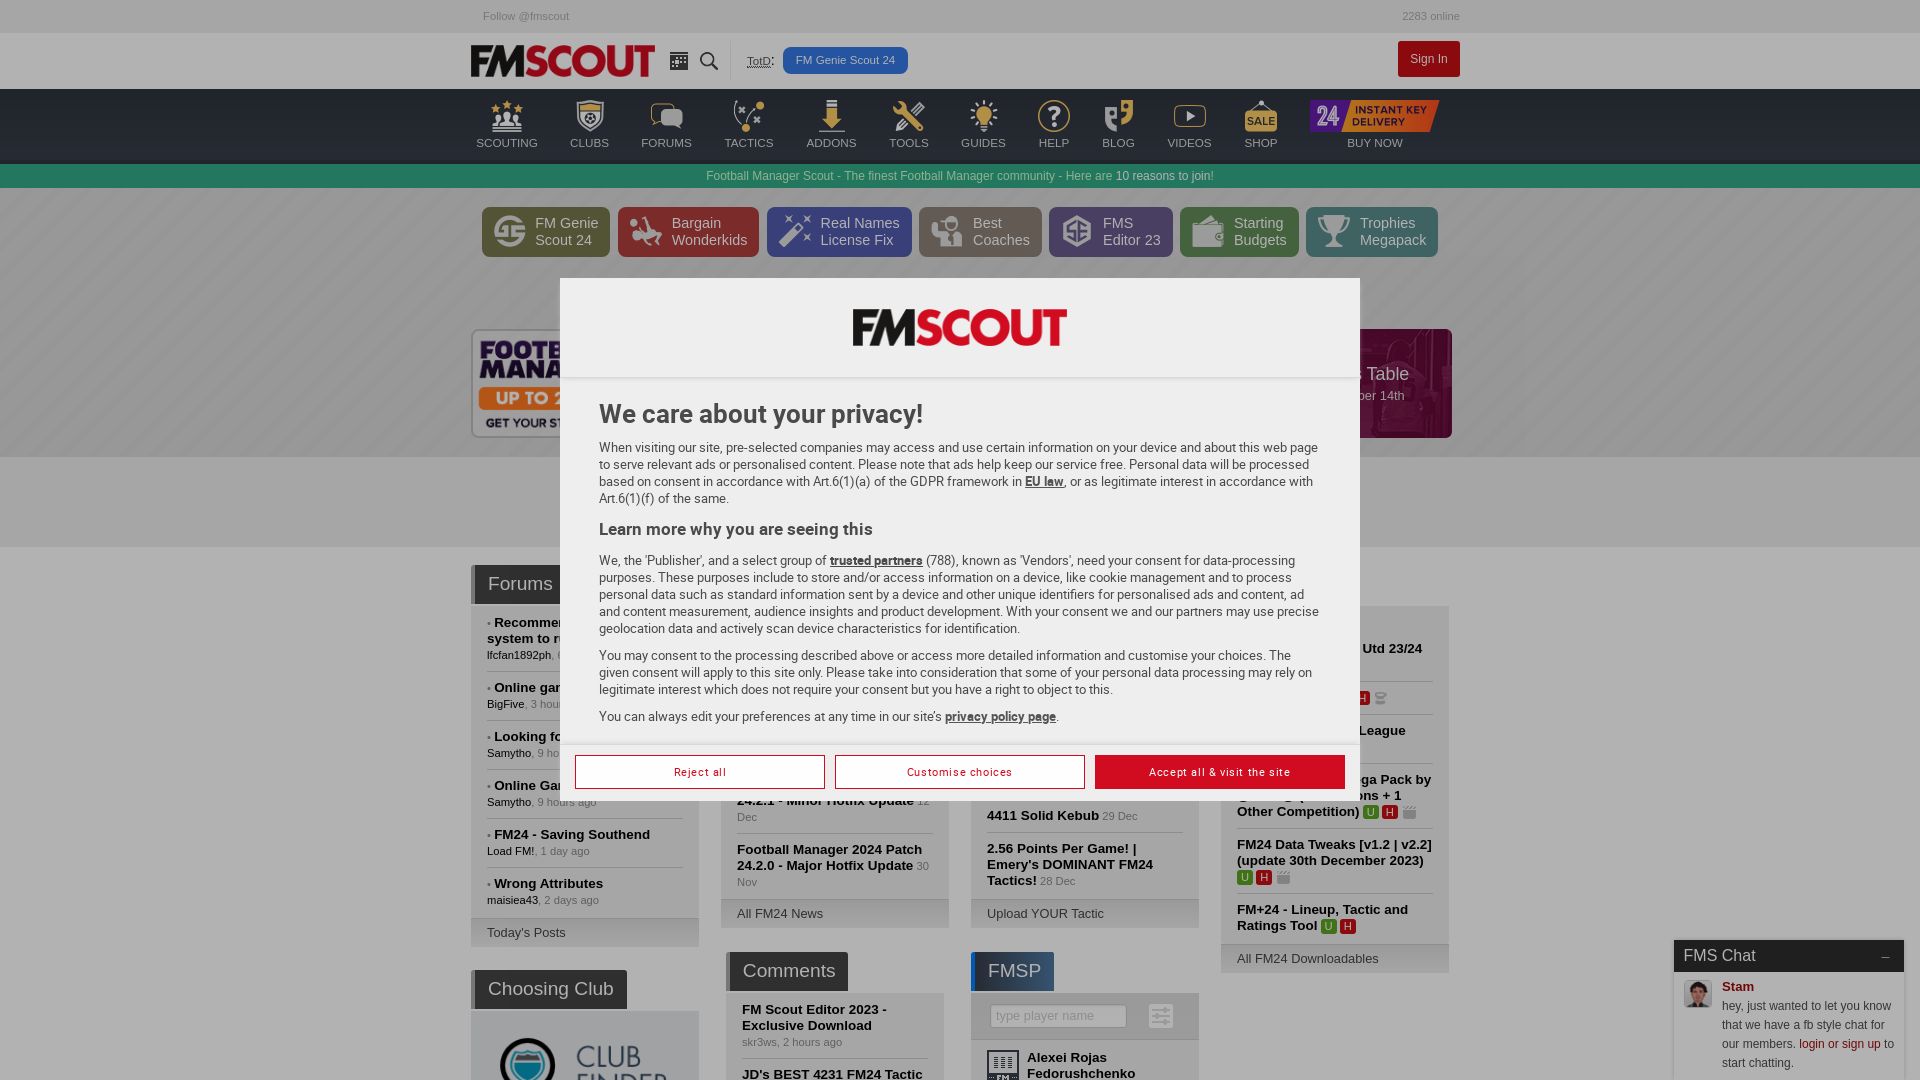 Website status fmscout.com is   ONLINE